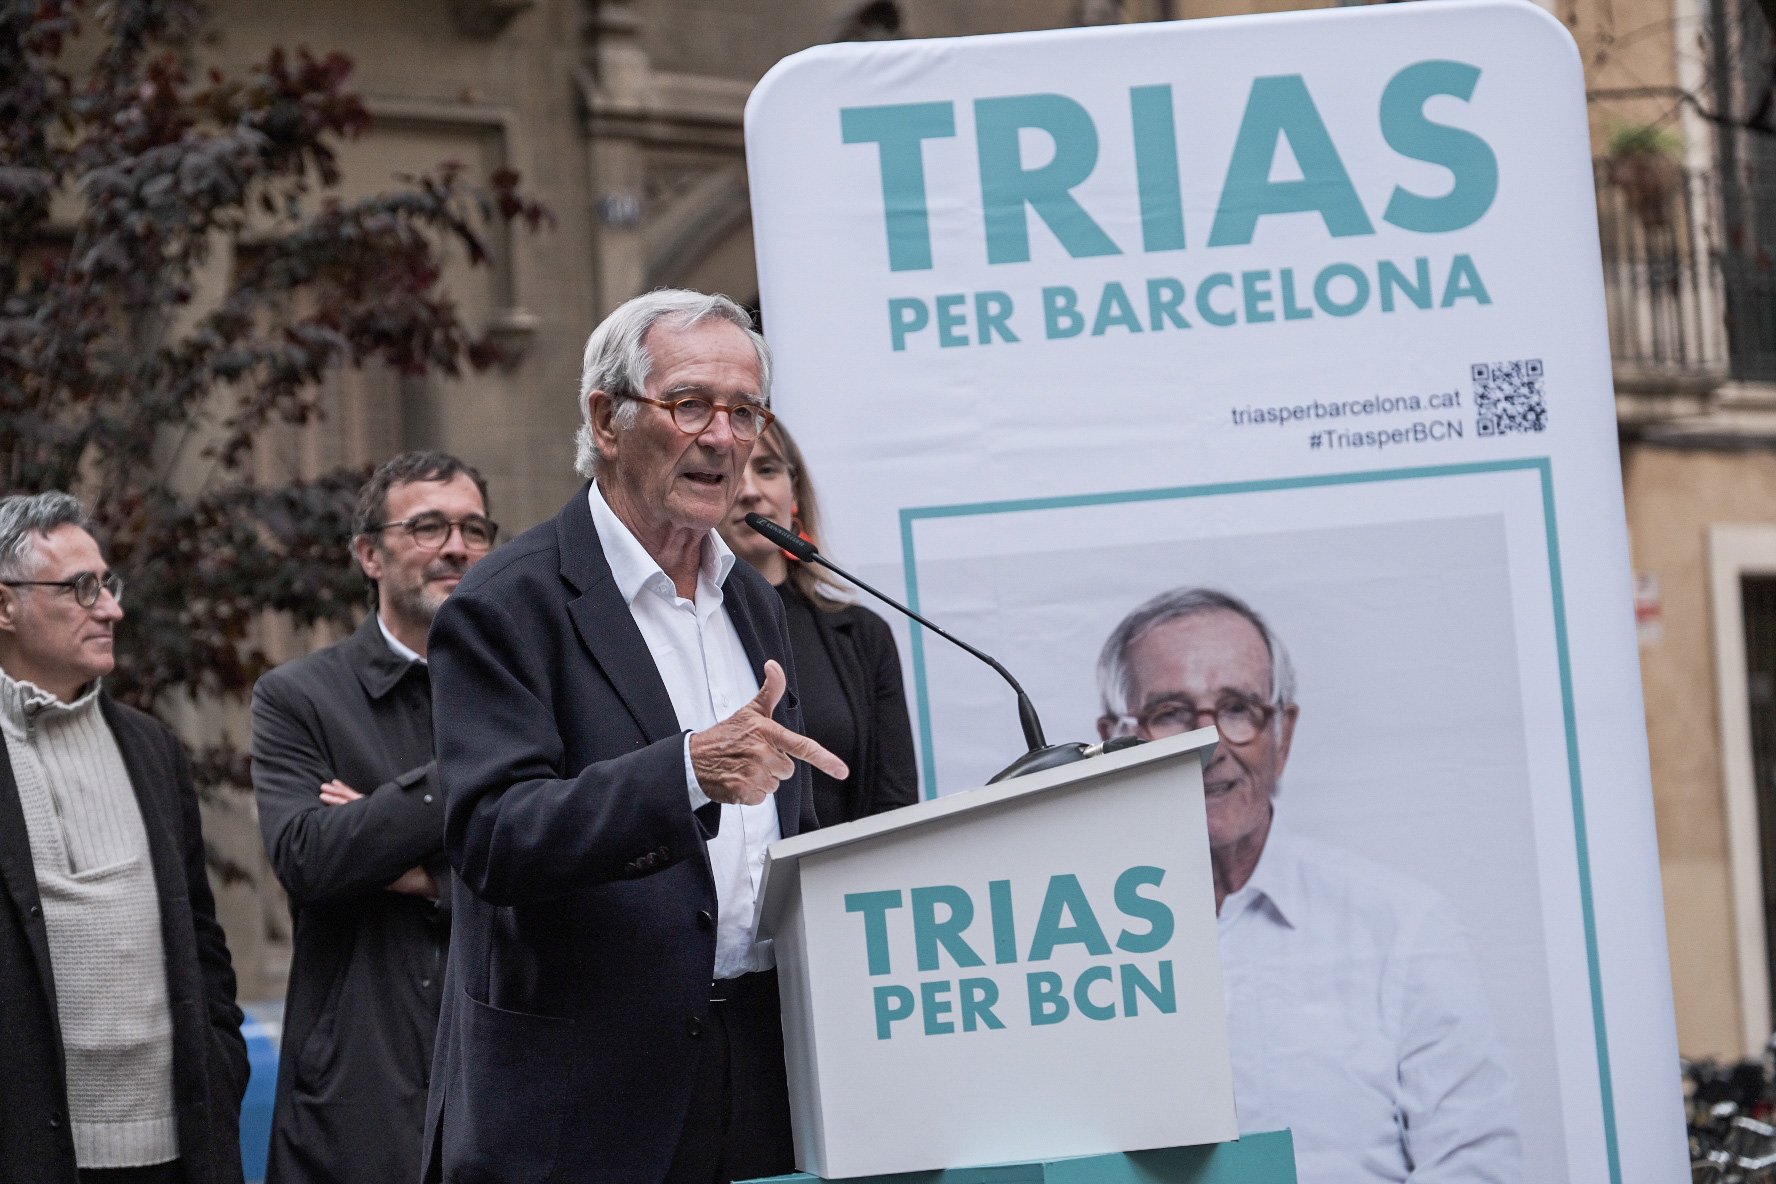 Xavier Trias arremet contra el pla de mobilitat d'Ada Colau perquè va "contra les persones"